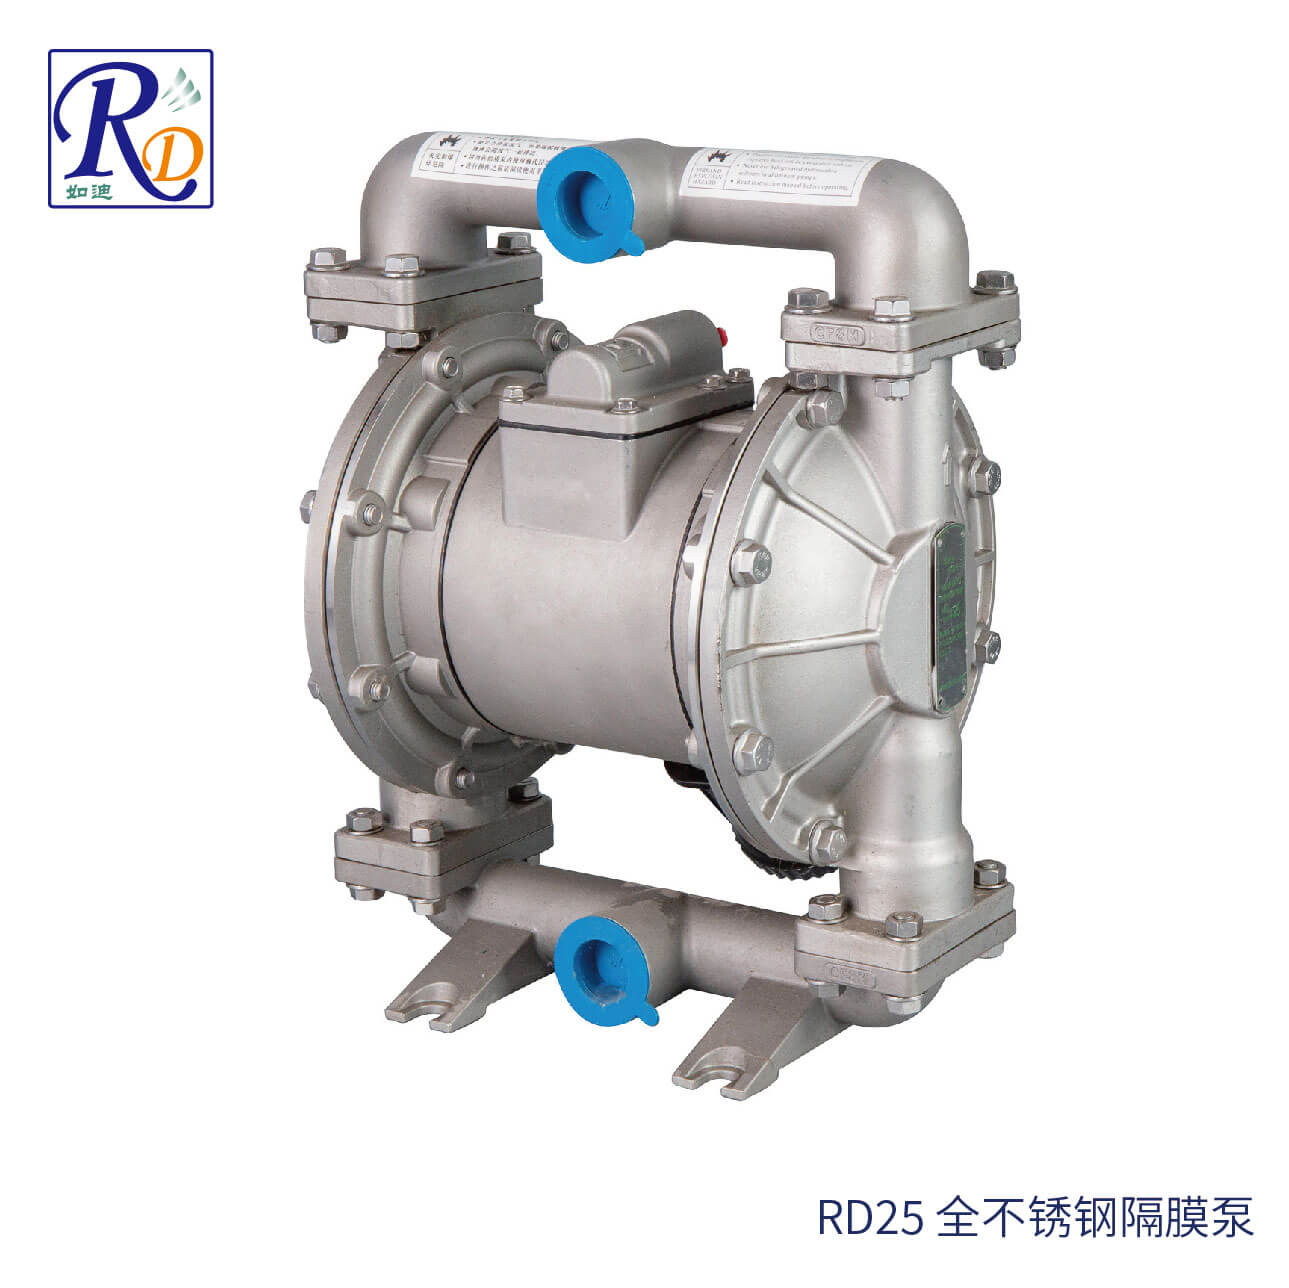 RD25 全不锈钢隔膜泵